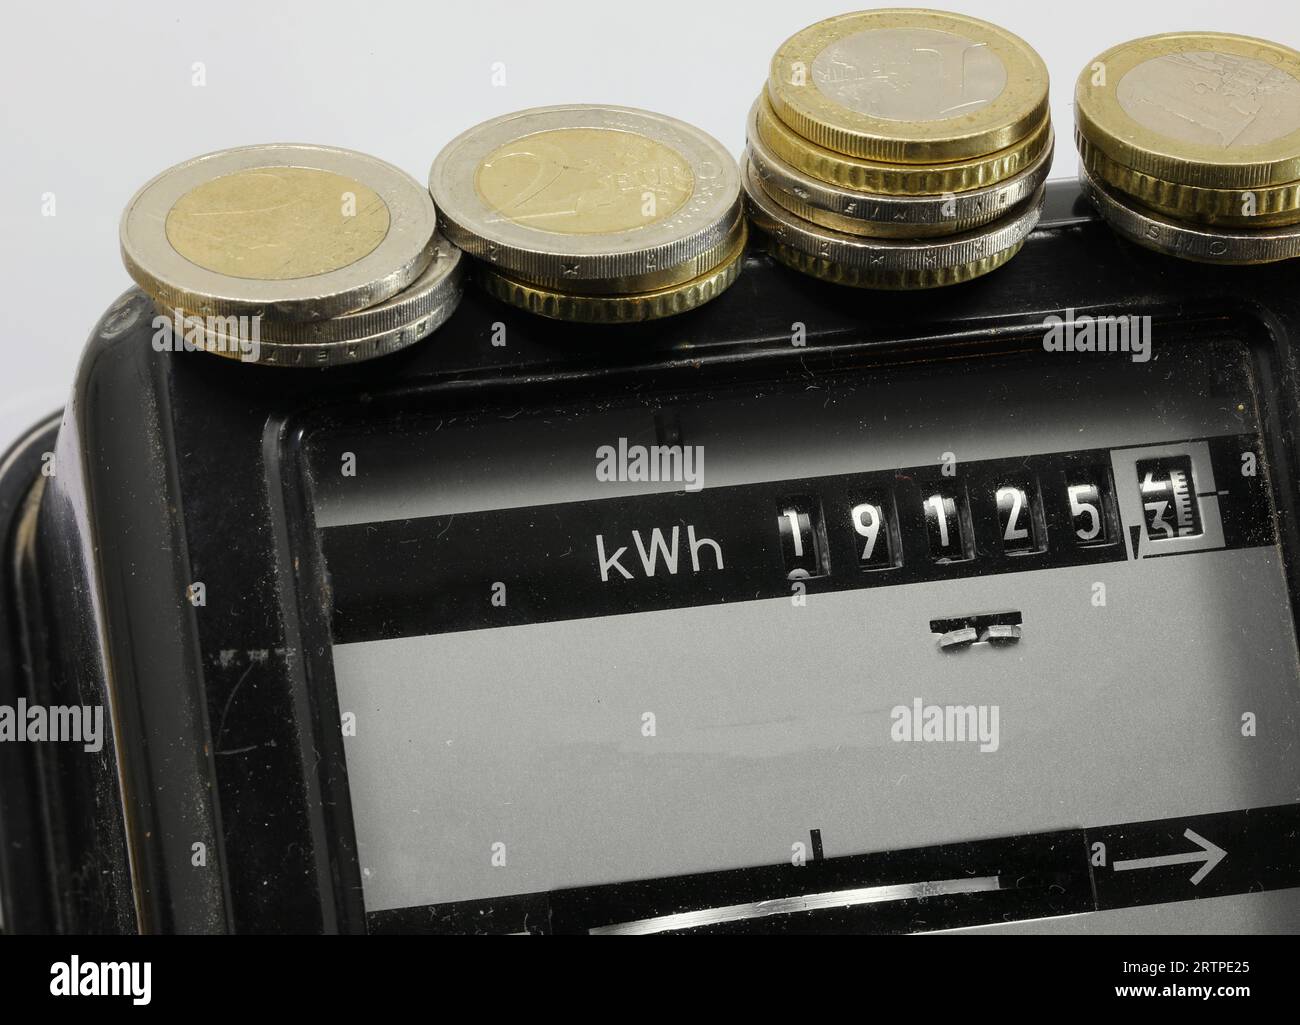 Compteur d'électricité avec la valeur en kWh et pièces en euros dessus Banque D'Images